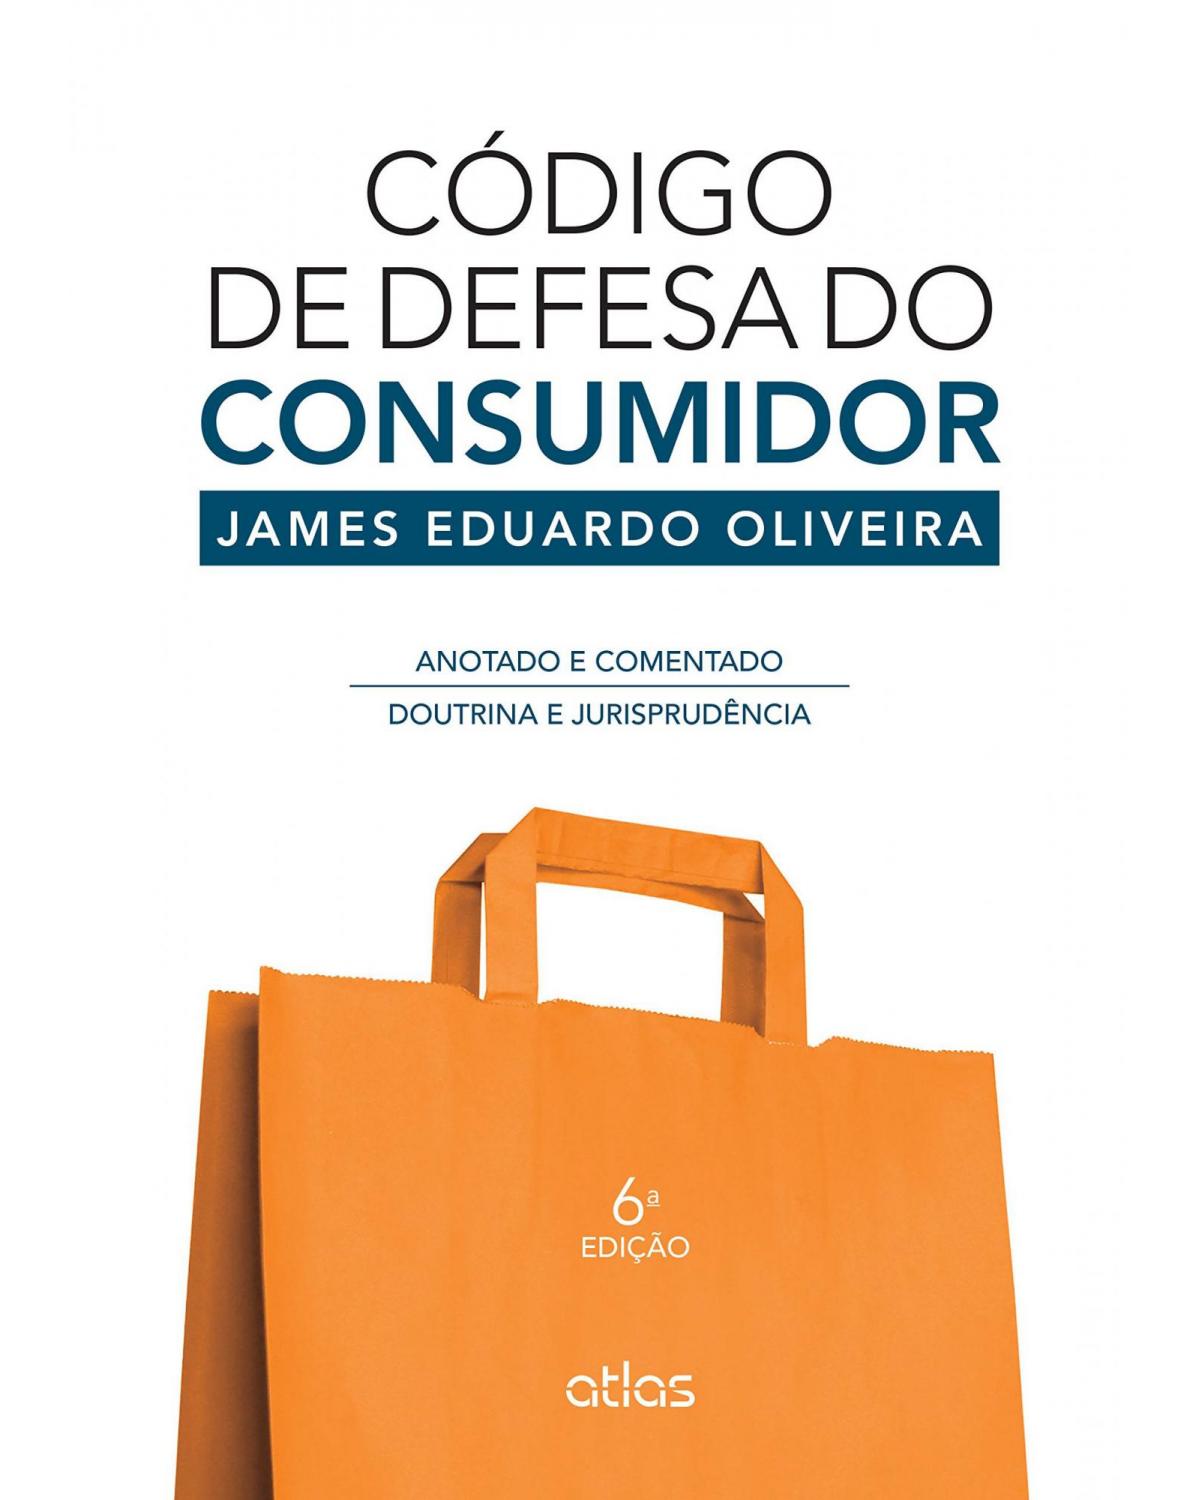 Código de defesa do consumidor - Anotado e comentado - Doutrina e jurisprudência - 6ª Edição | 2015